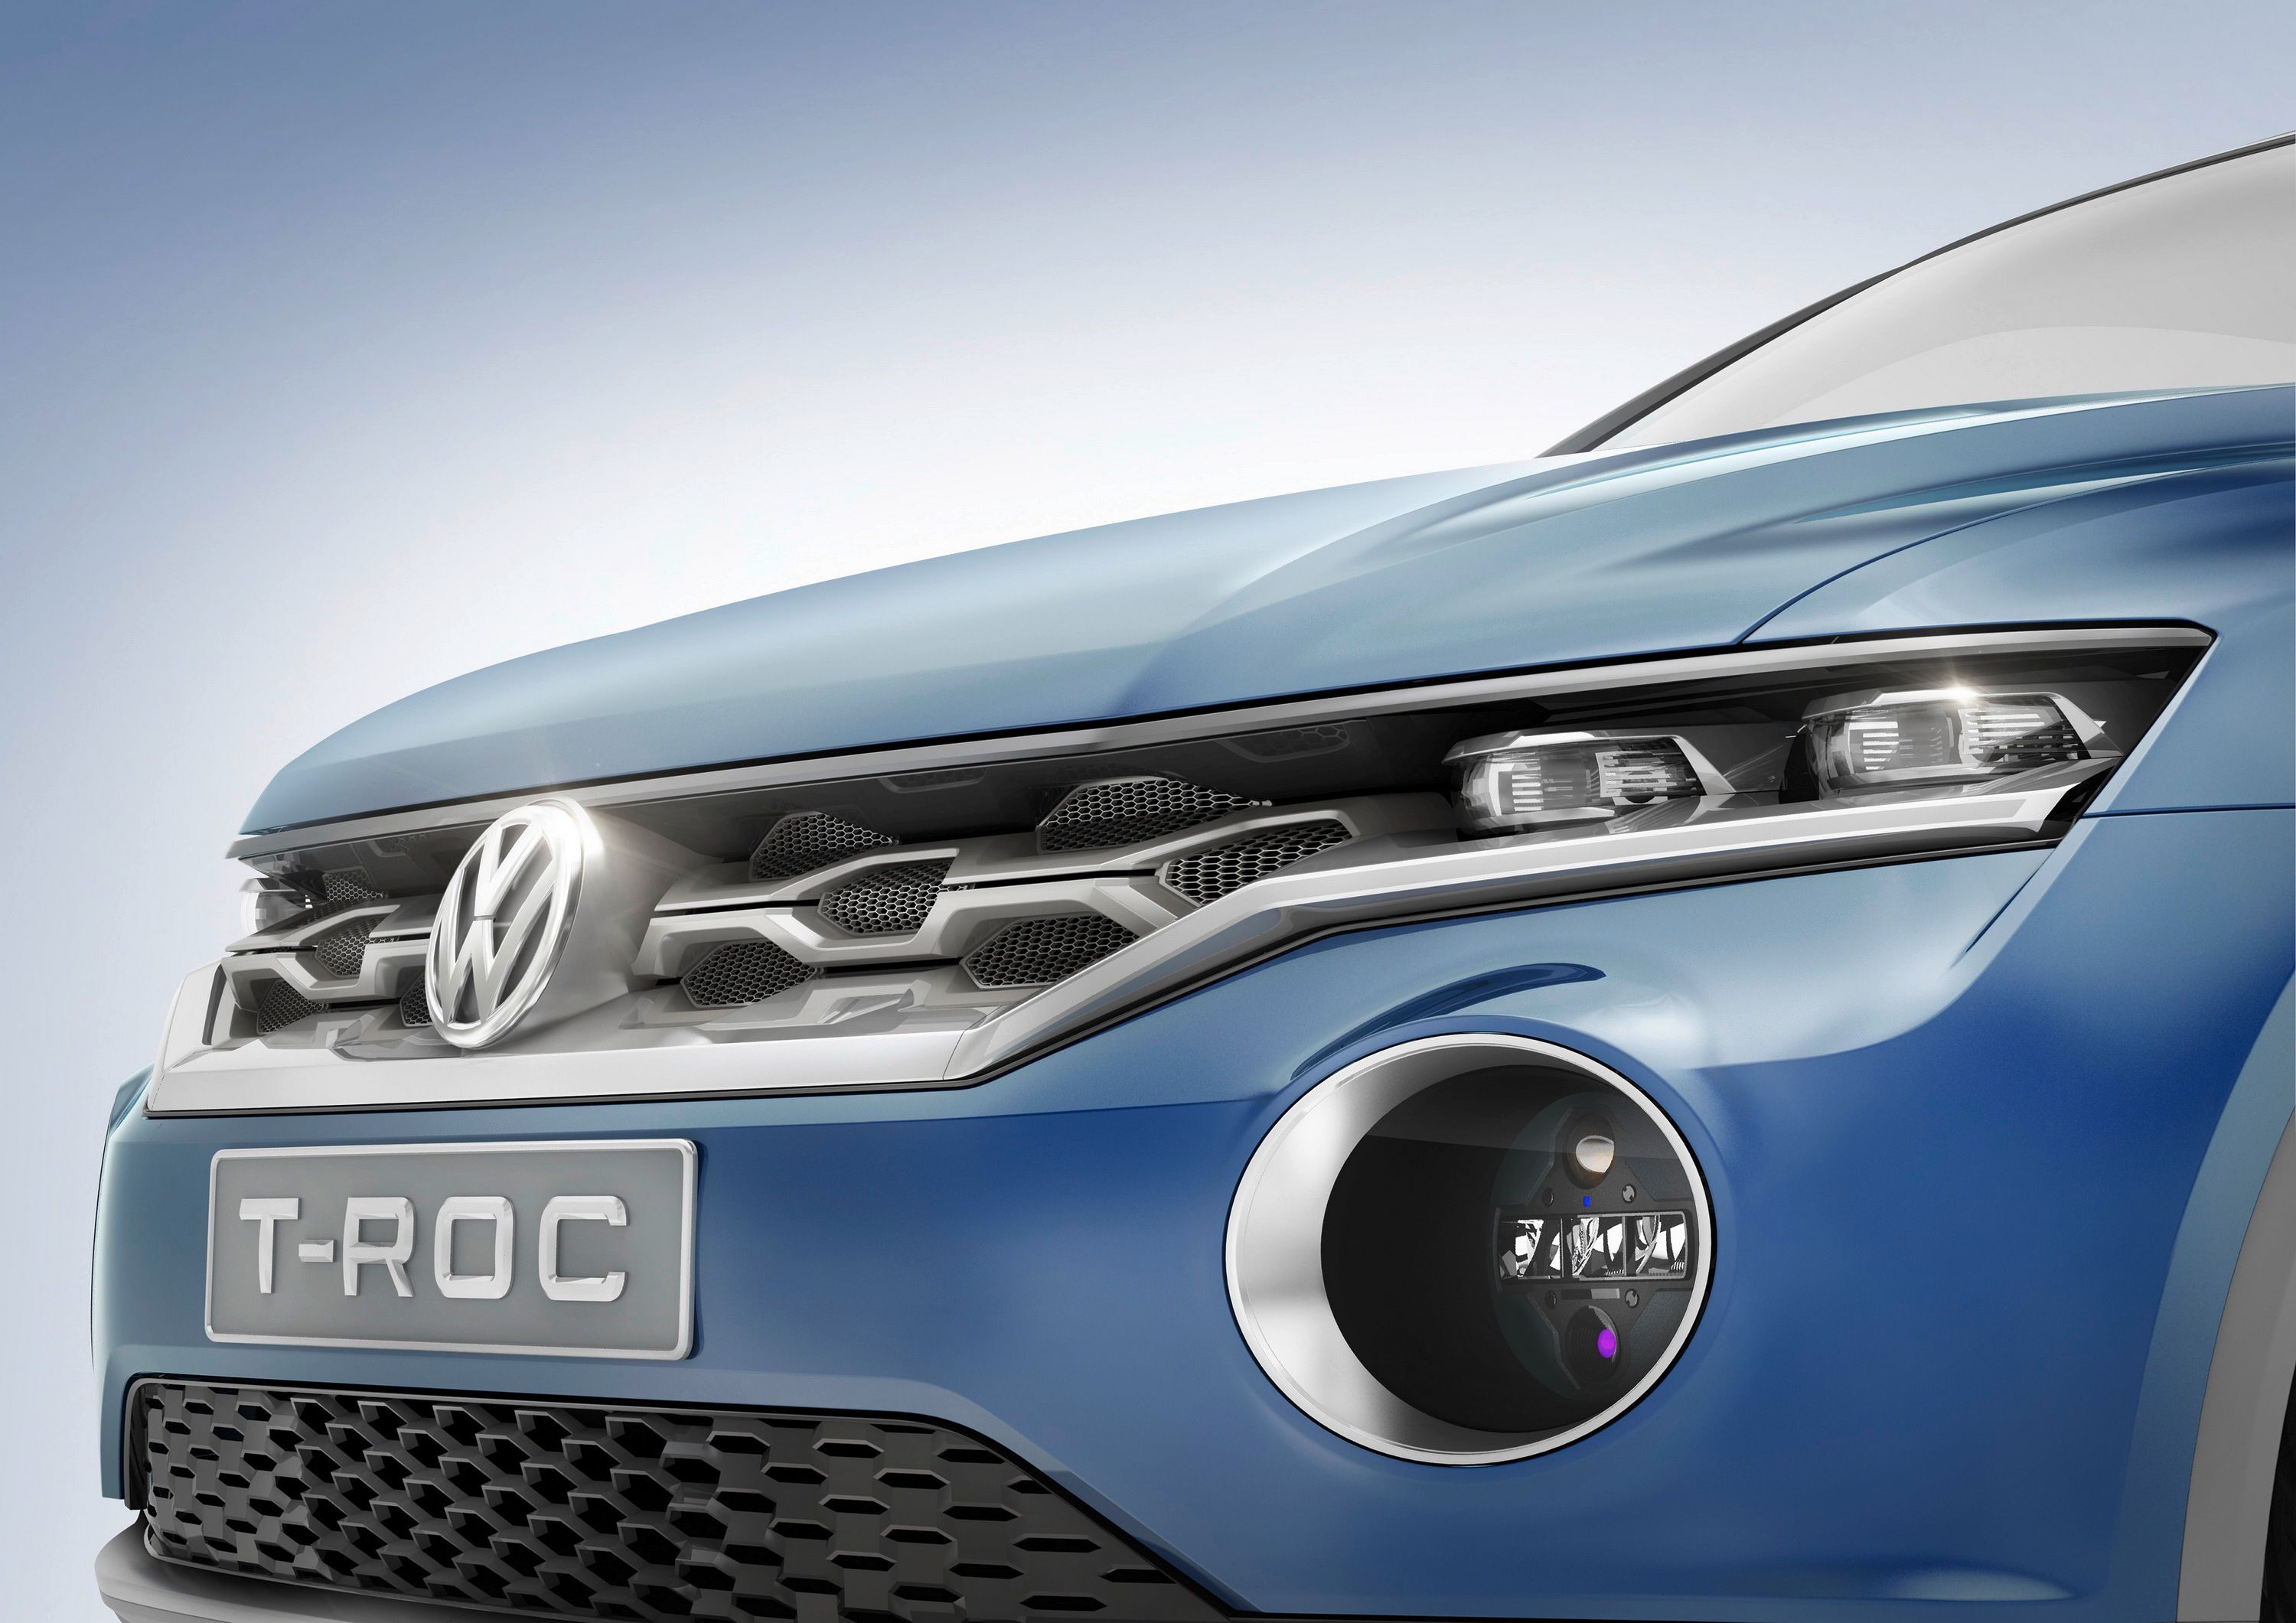 2014 Volkswagen T-ROC